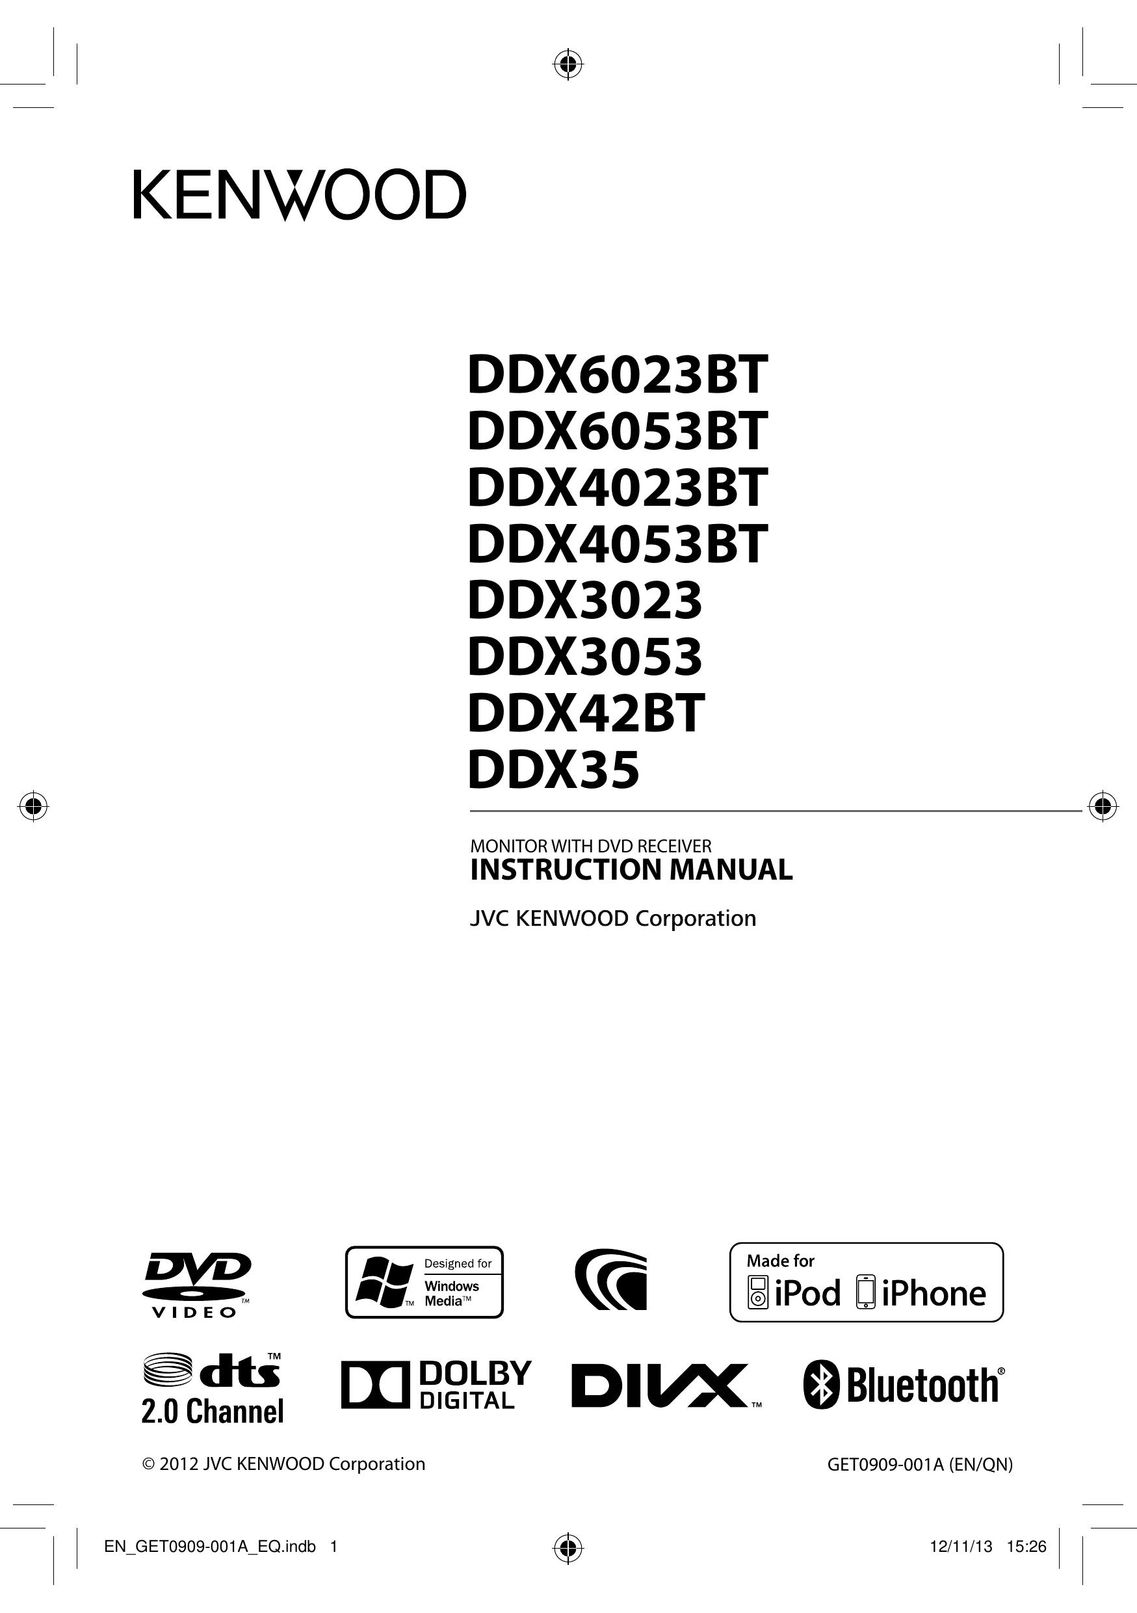 Kenwood DDX42BT Car Video System User Manual